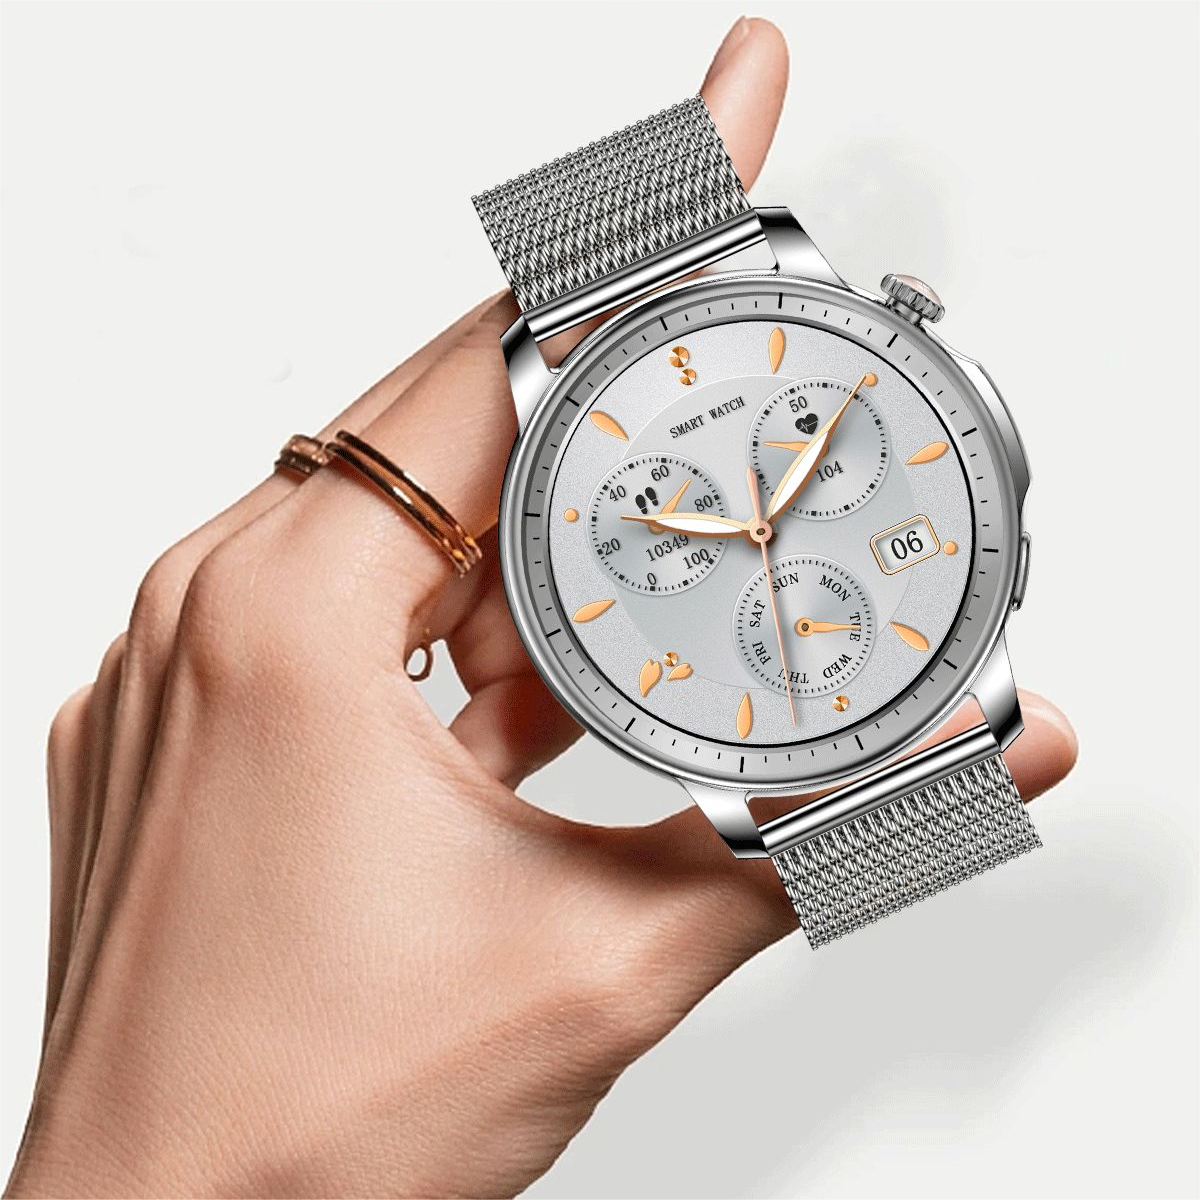 Відкрийте для себе потужний розумний годинник V65: стиль, функції та багато іншого!